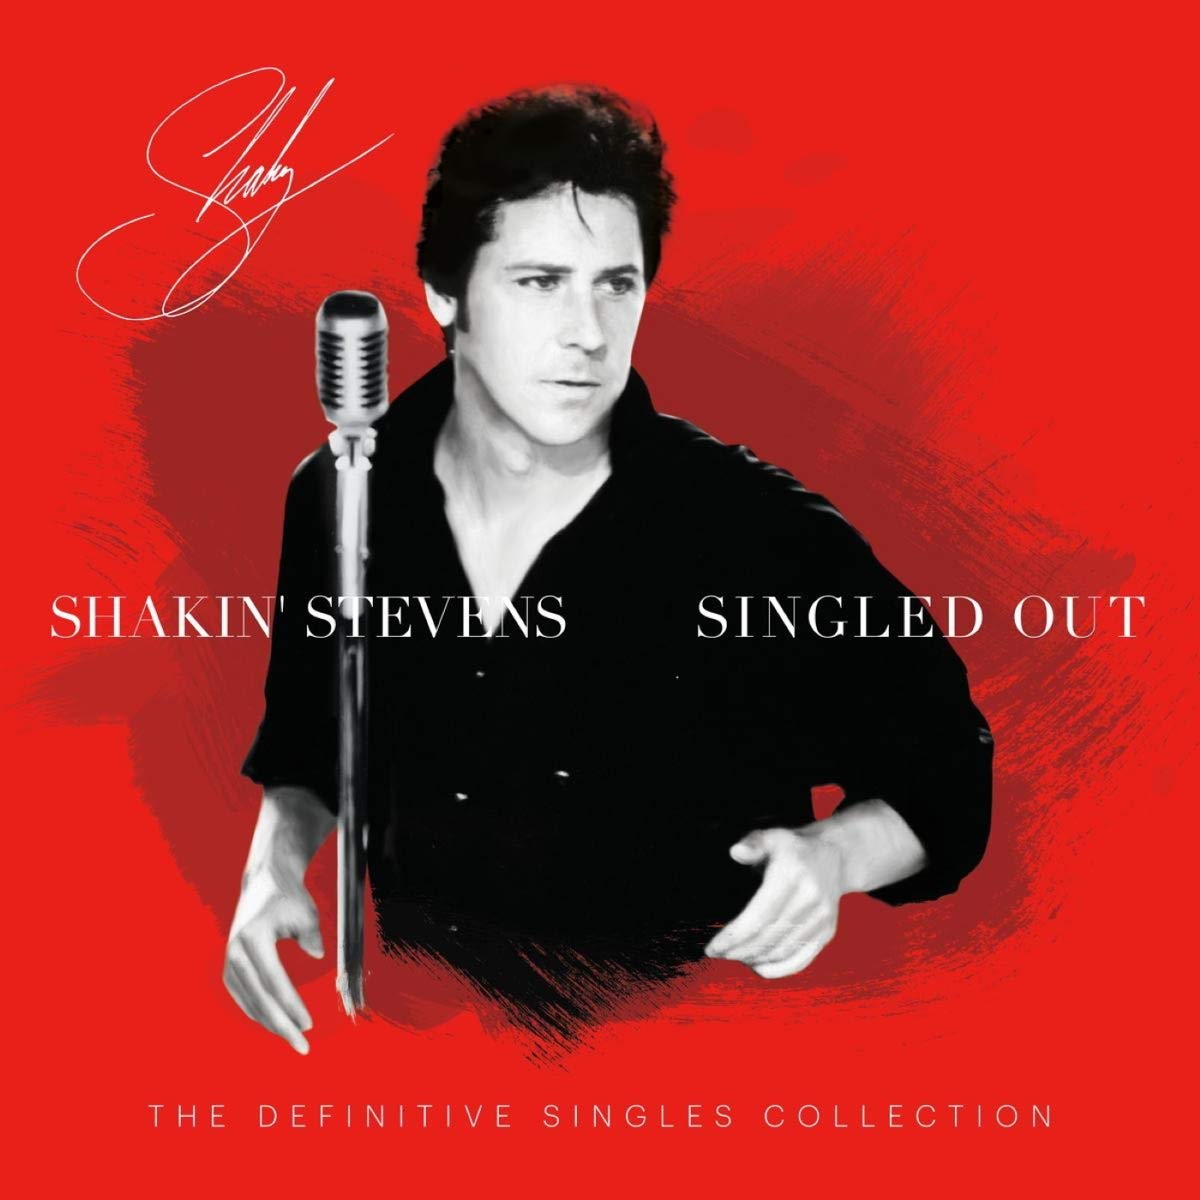 Vinile Shakin Stevens - Singled Out (2 Lp) NUOVO SIGILLATO, EDIZIONE DEL 27/11/2020 SUBITO DISPONIBILE